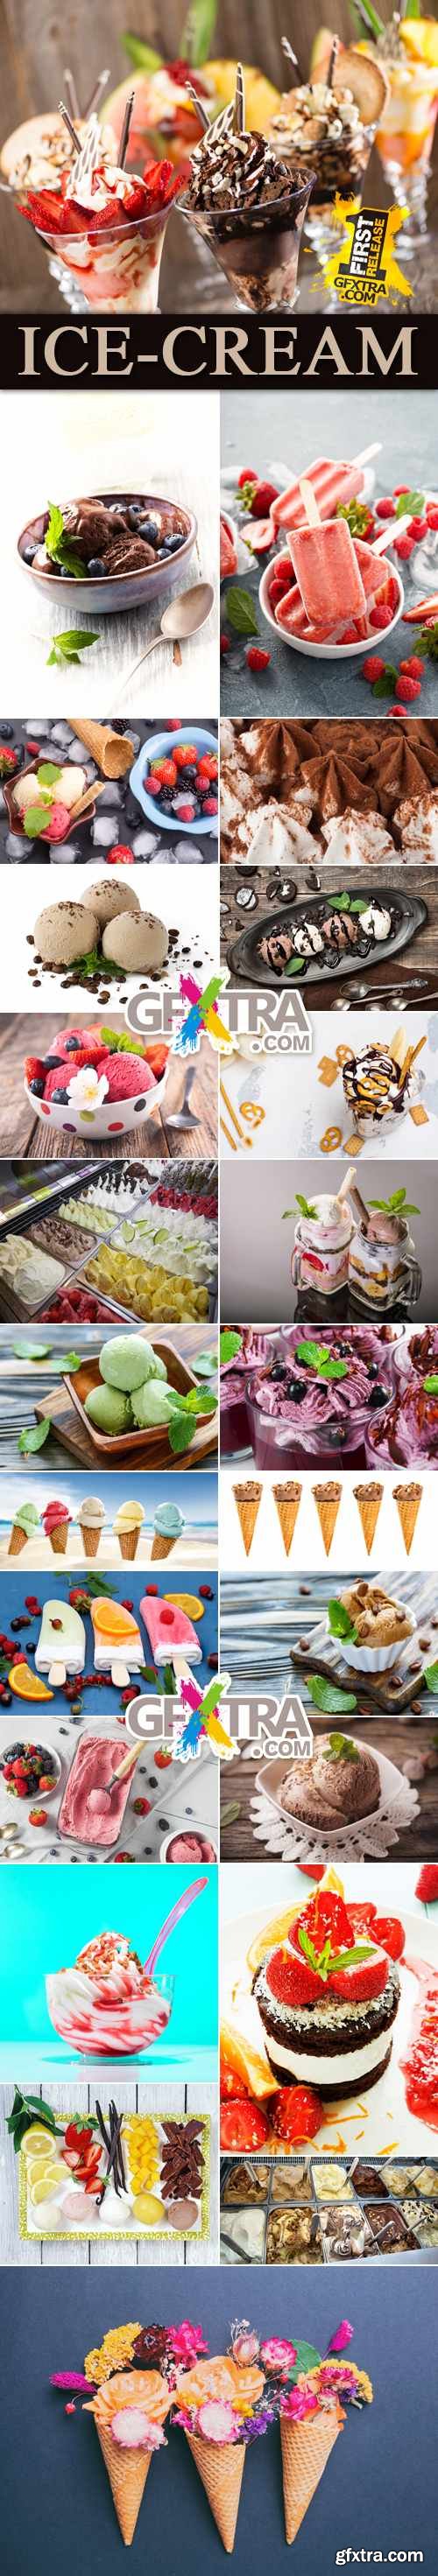 Stock Photo - Ice-Cream